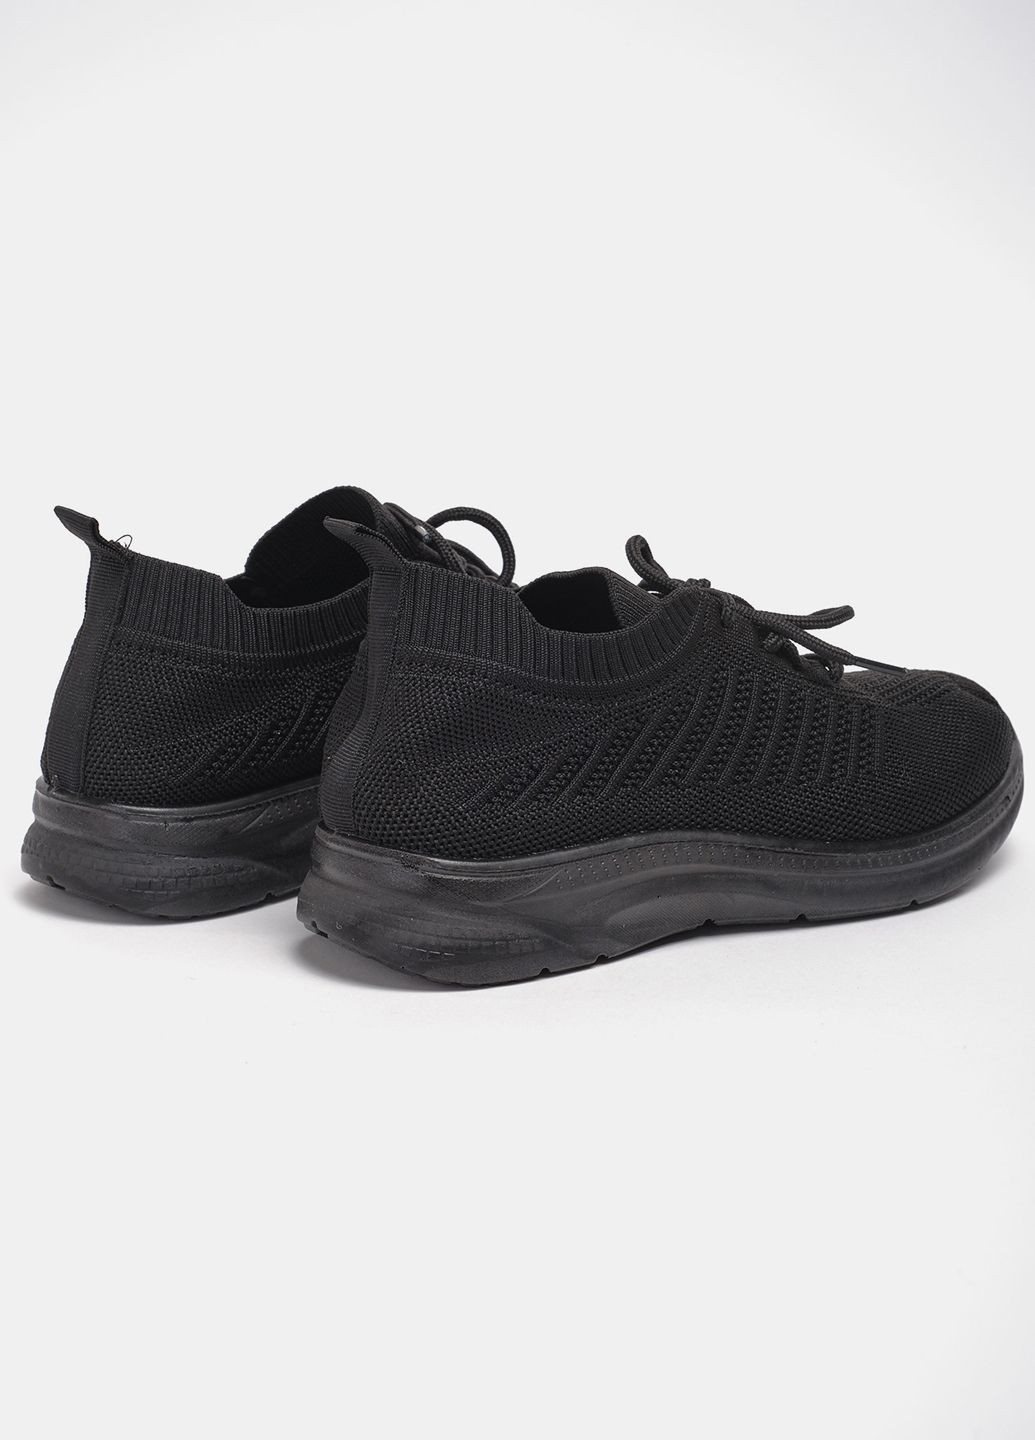 Чорні літні кросівки мода l07-1 текстиль чорний норма 342885 Power